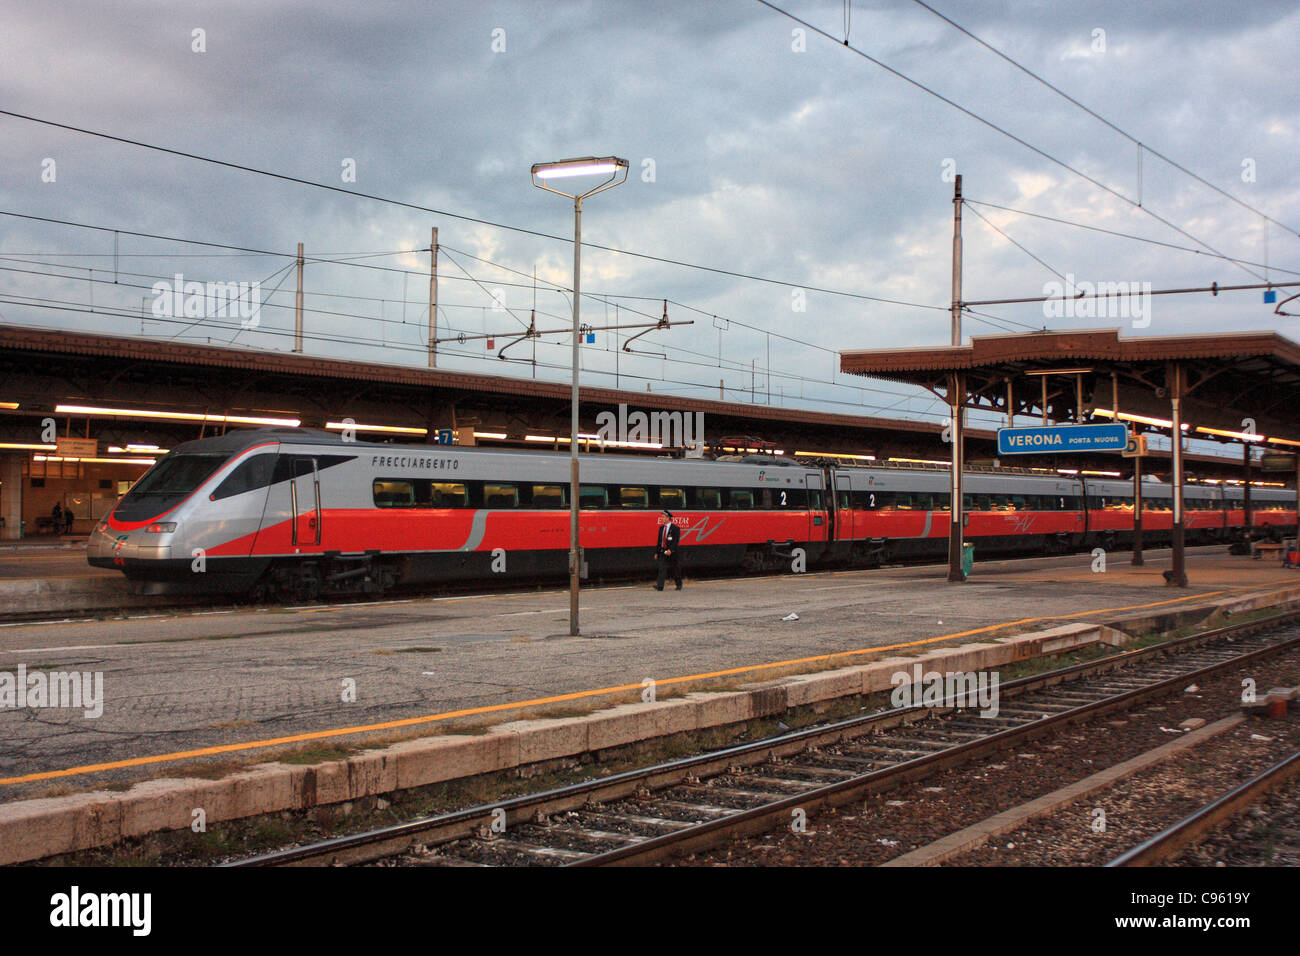 Eurostar trenitalia at Verona porta nuova train station, Italy Stock Photo